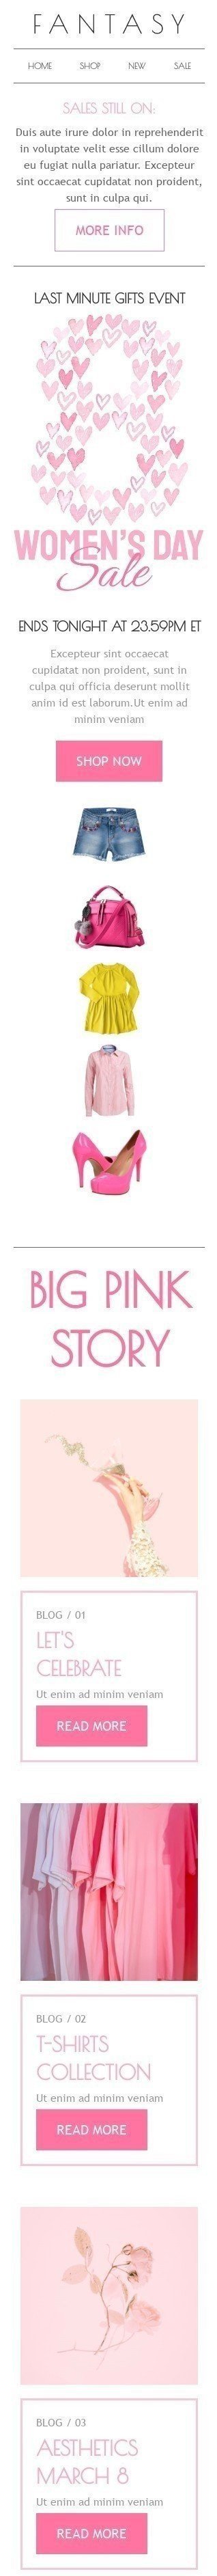 Plantilla de correo electrónico «Gran historia rosa» de Día de la Mujer para la industria de Moda Vista de móvil